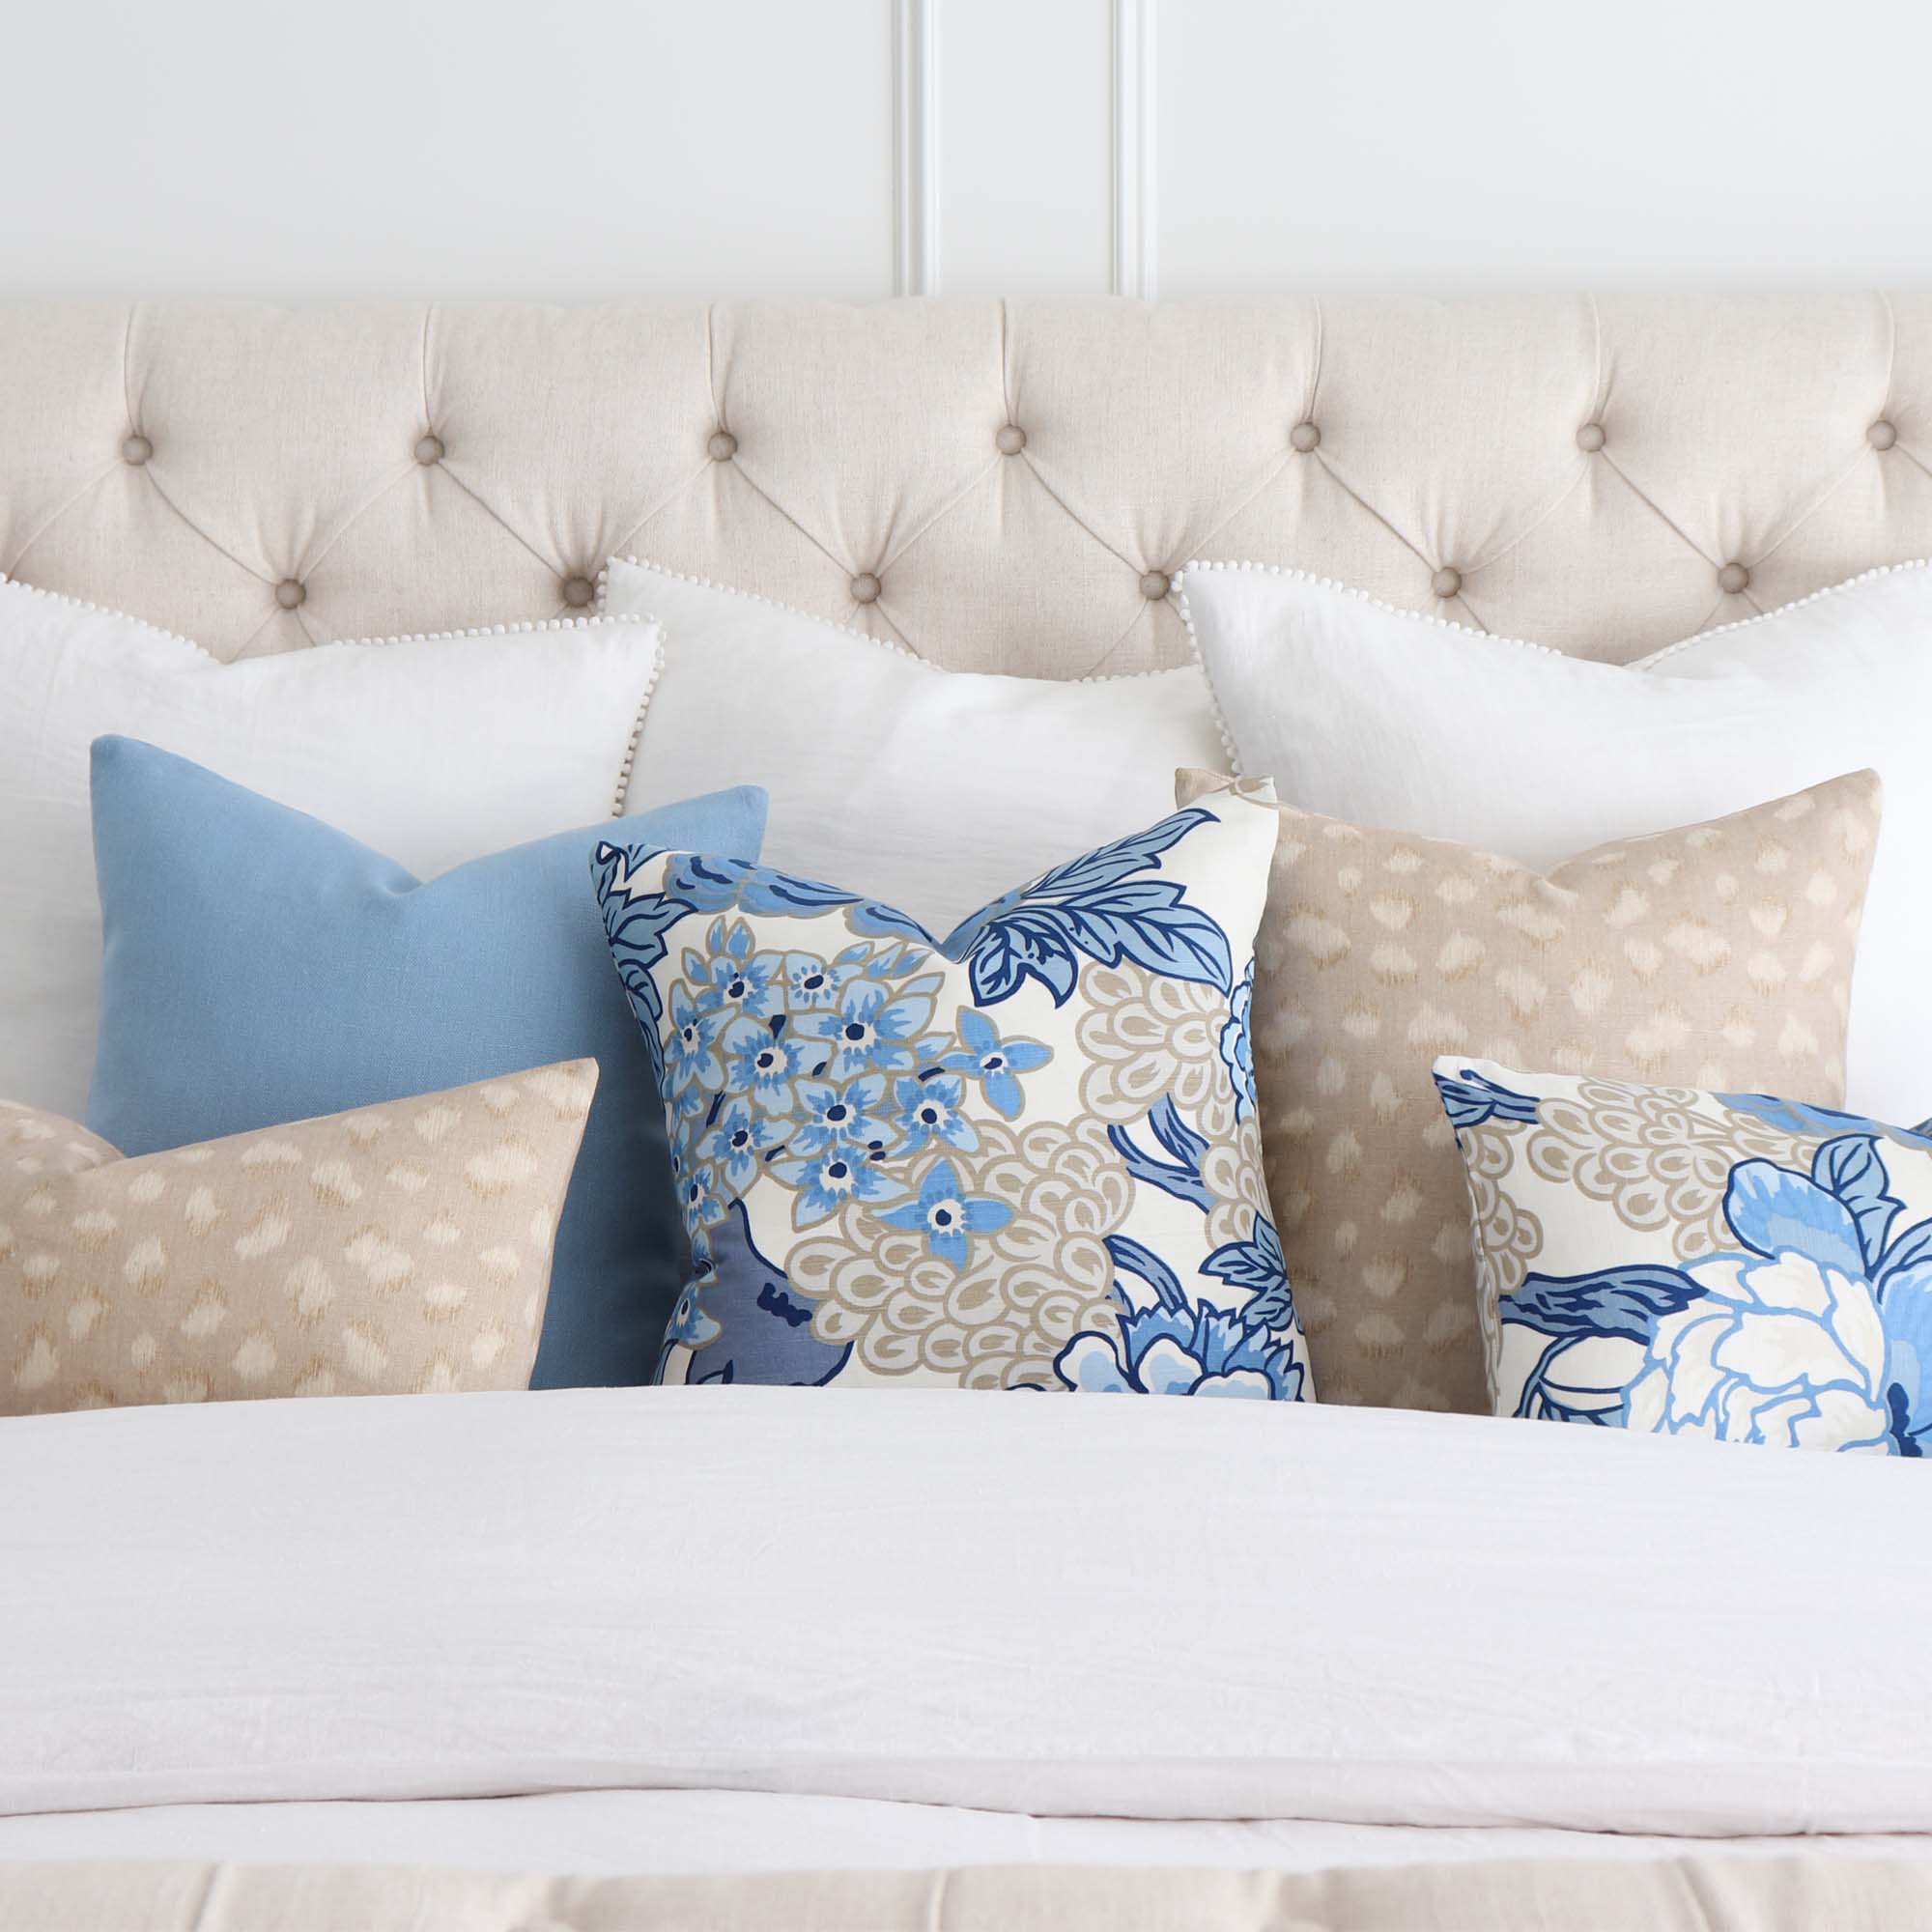 Thibaut Hamilton Textured Blue White Pillow Cover